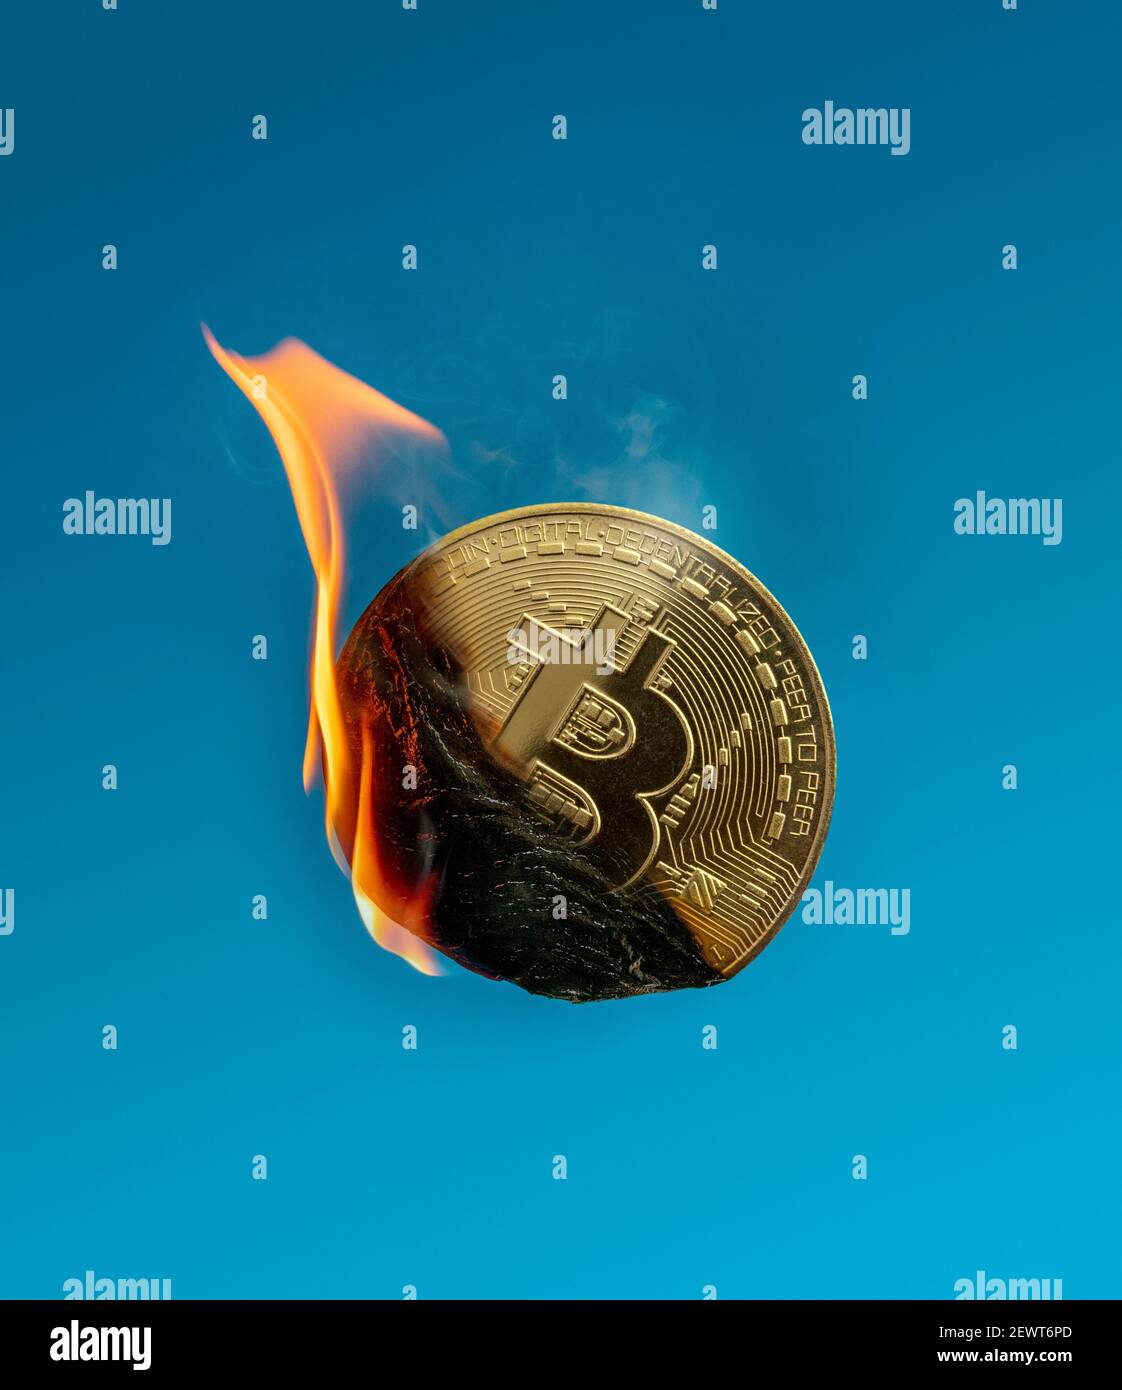 Image d'un jeton bitcoin en feu montrant des flammes et fumée représentant la chute et la consommation d'énergie Banque D'Images